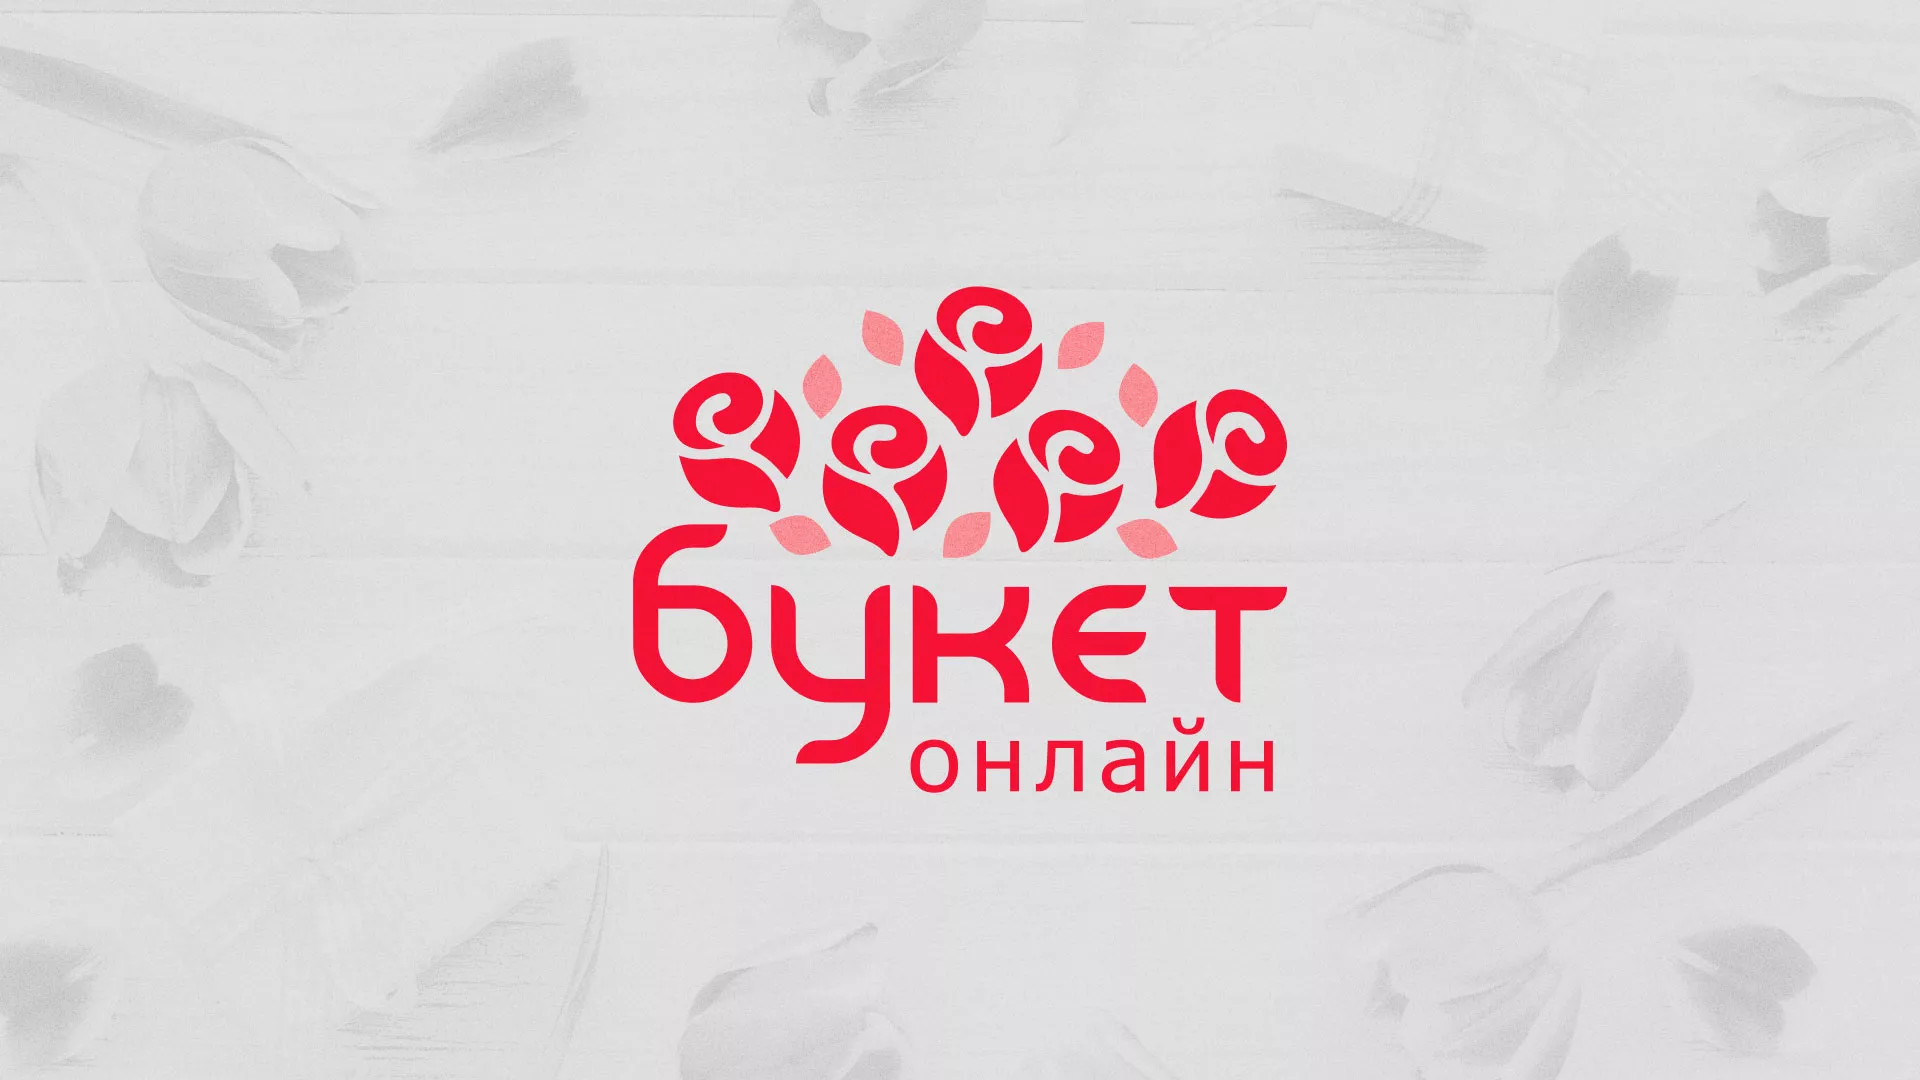 Создание интернет-магазина «Букет-онлайн» по цветам в Кирово-Чепецке